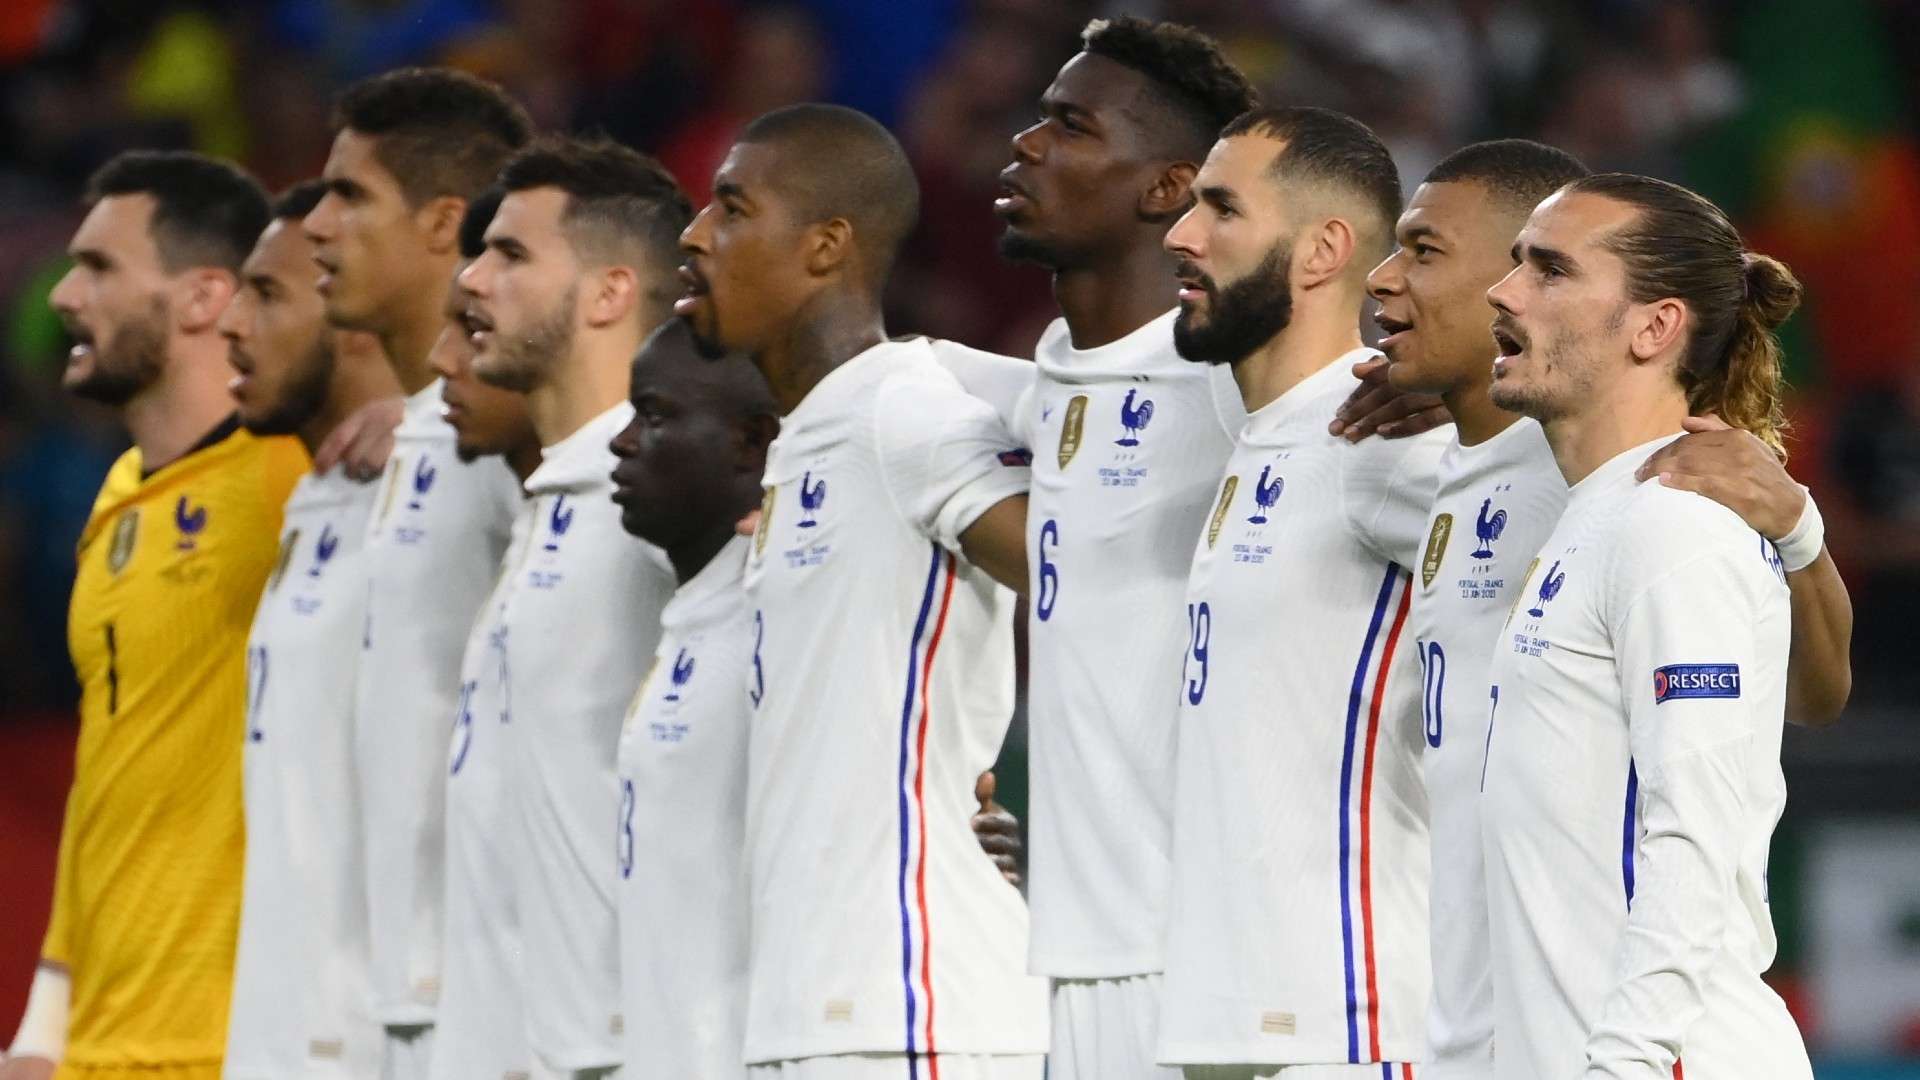 France national anthem